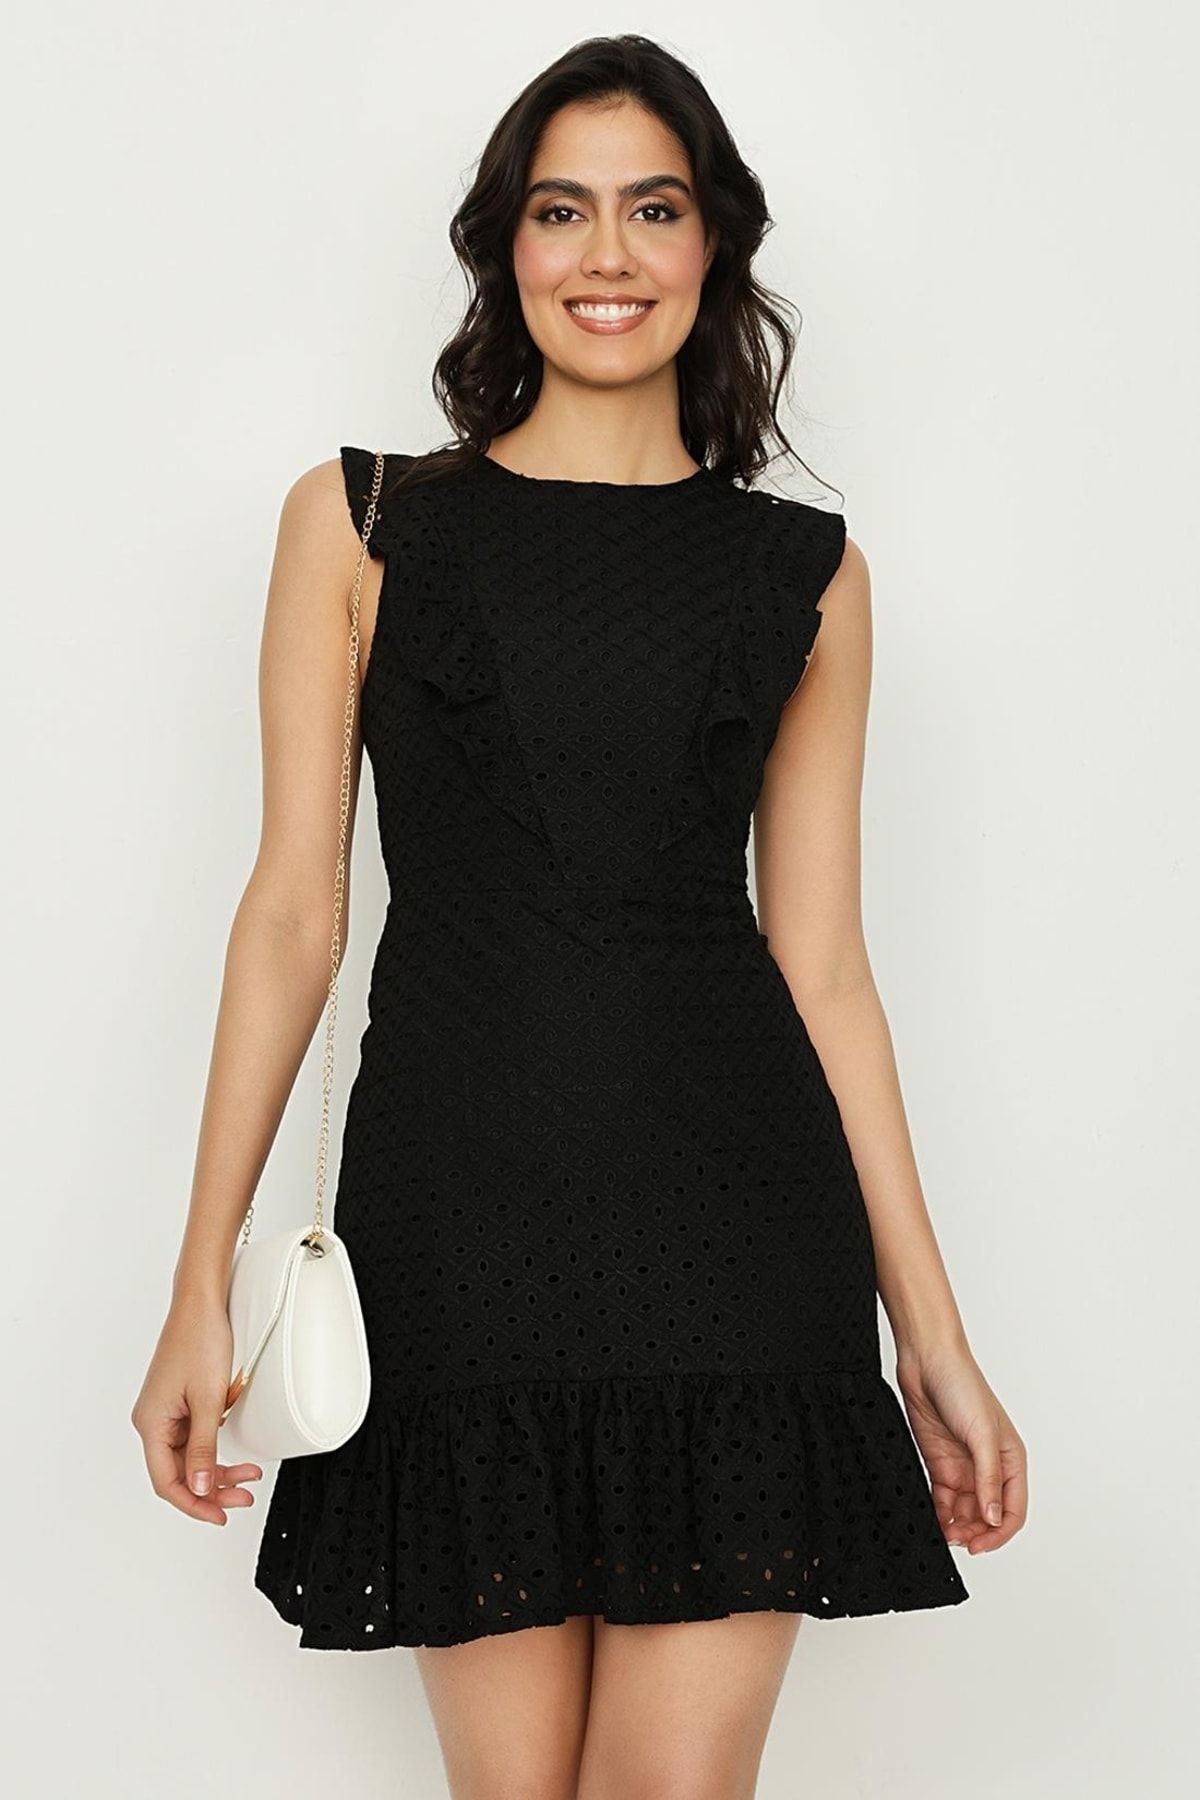 Select Moda Kadın Siyah Fırfırlı Eteği Volanlı Dantel Elbise